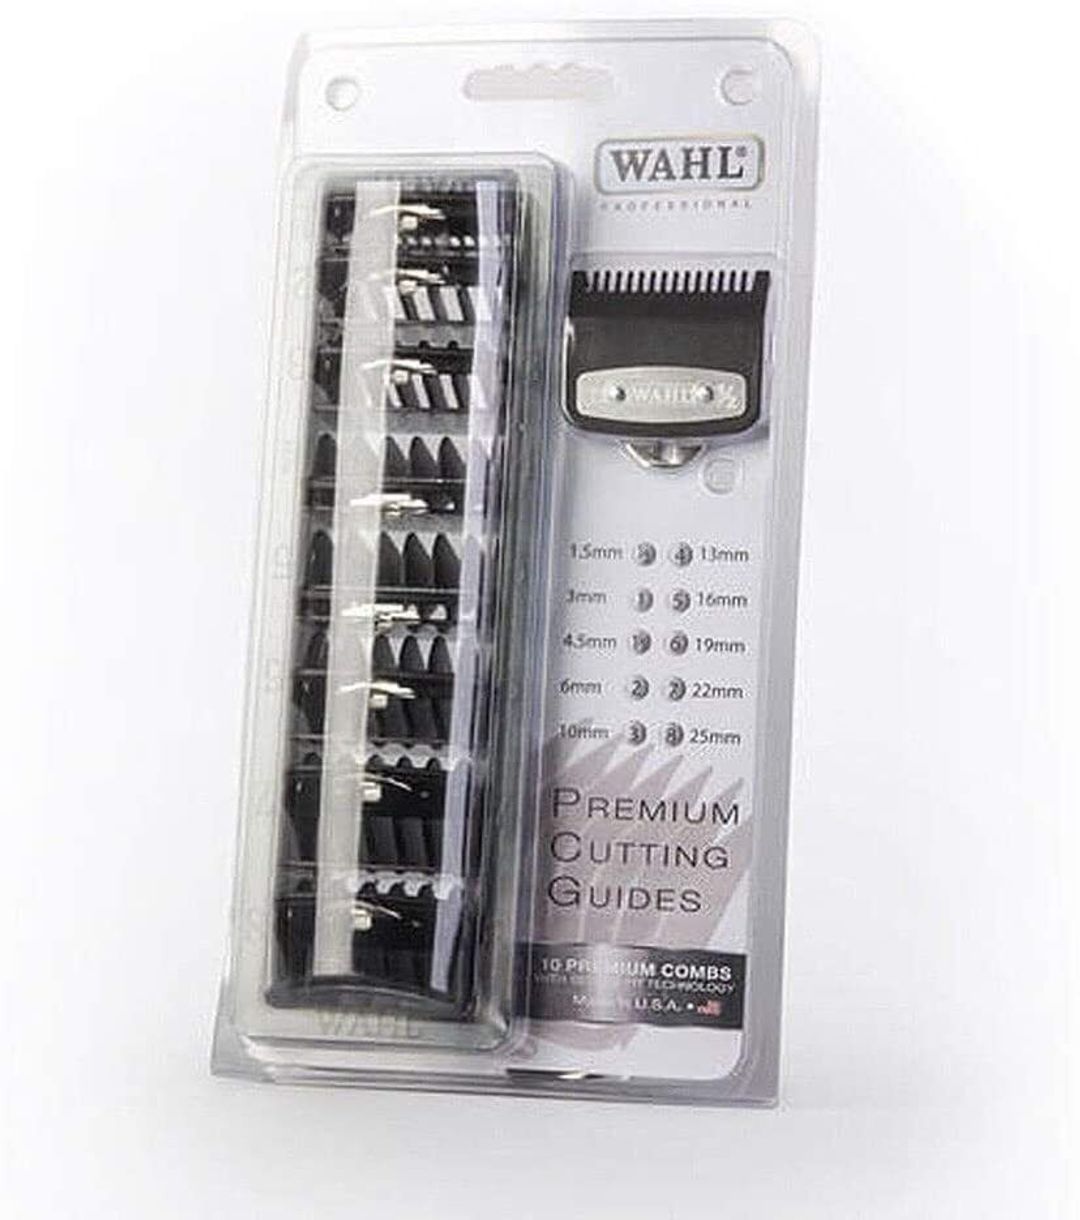 Wahl Premium Cutting Guides - 10 Premium Combs Black